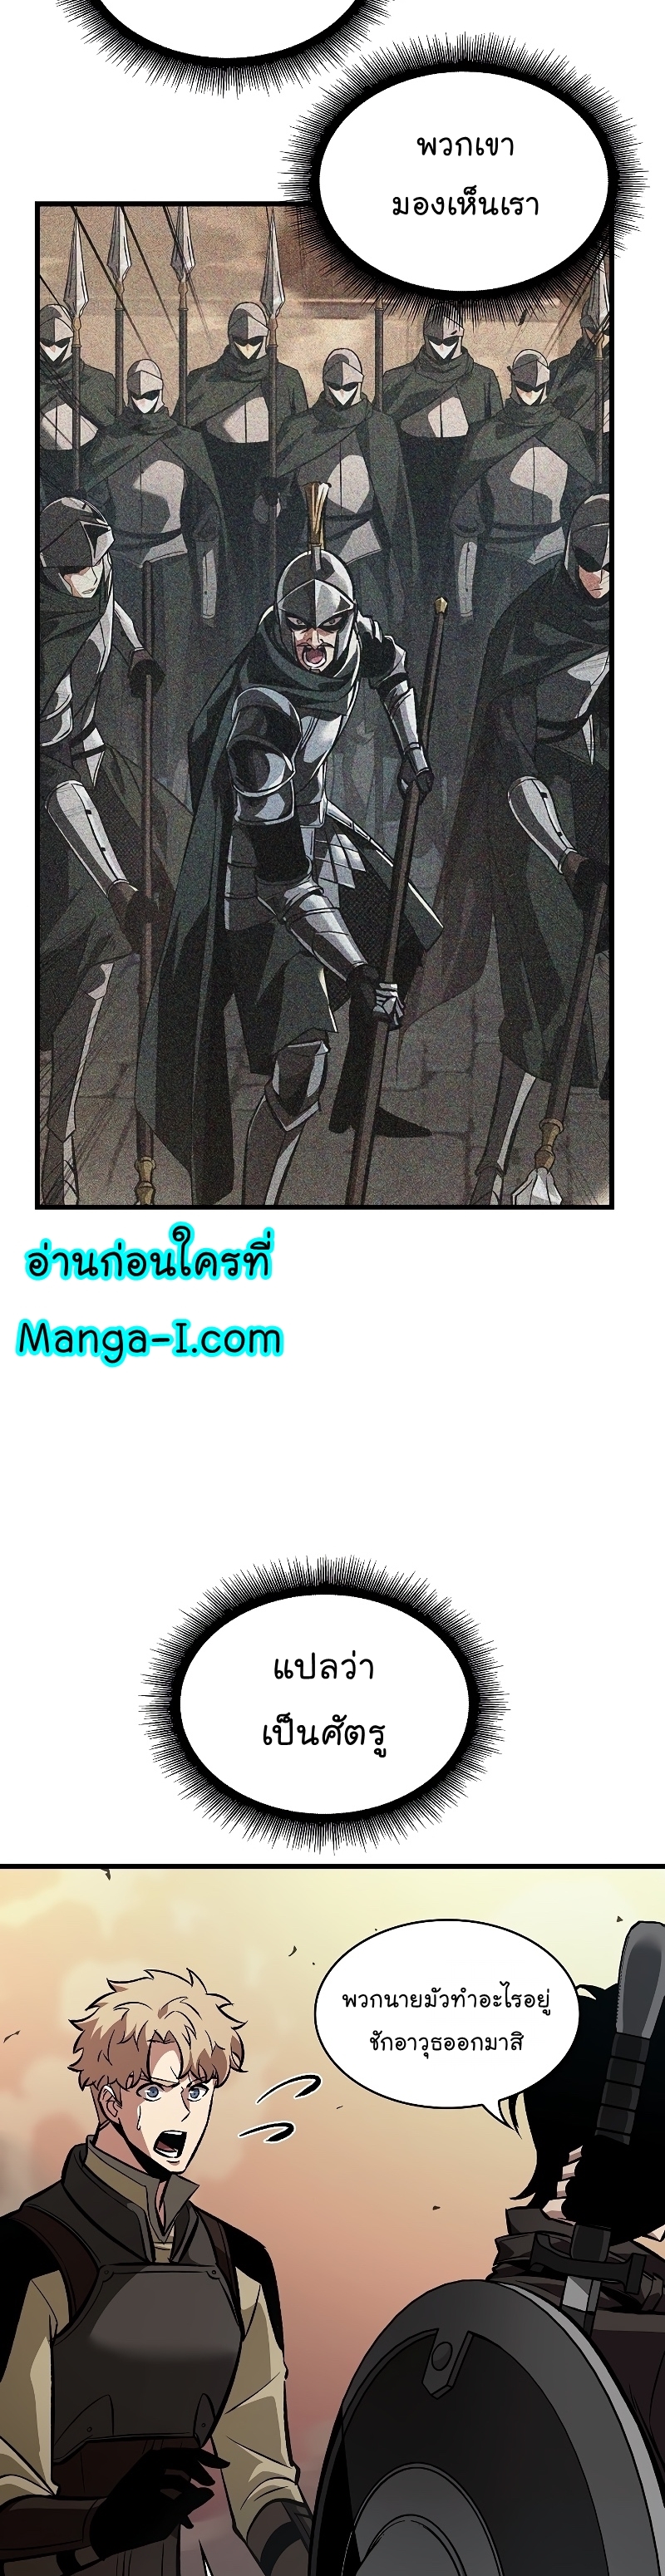 Manga I Manwha Pick Me 45 (7)